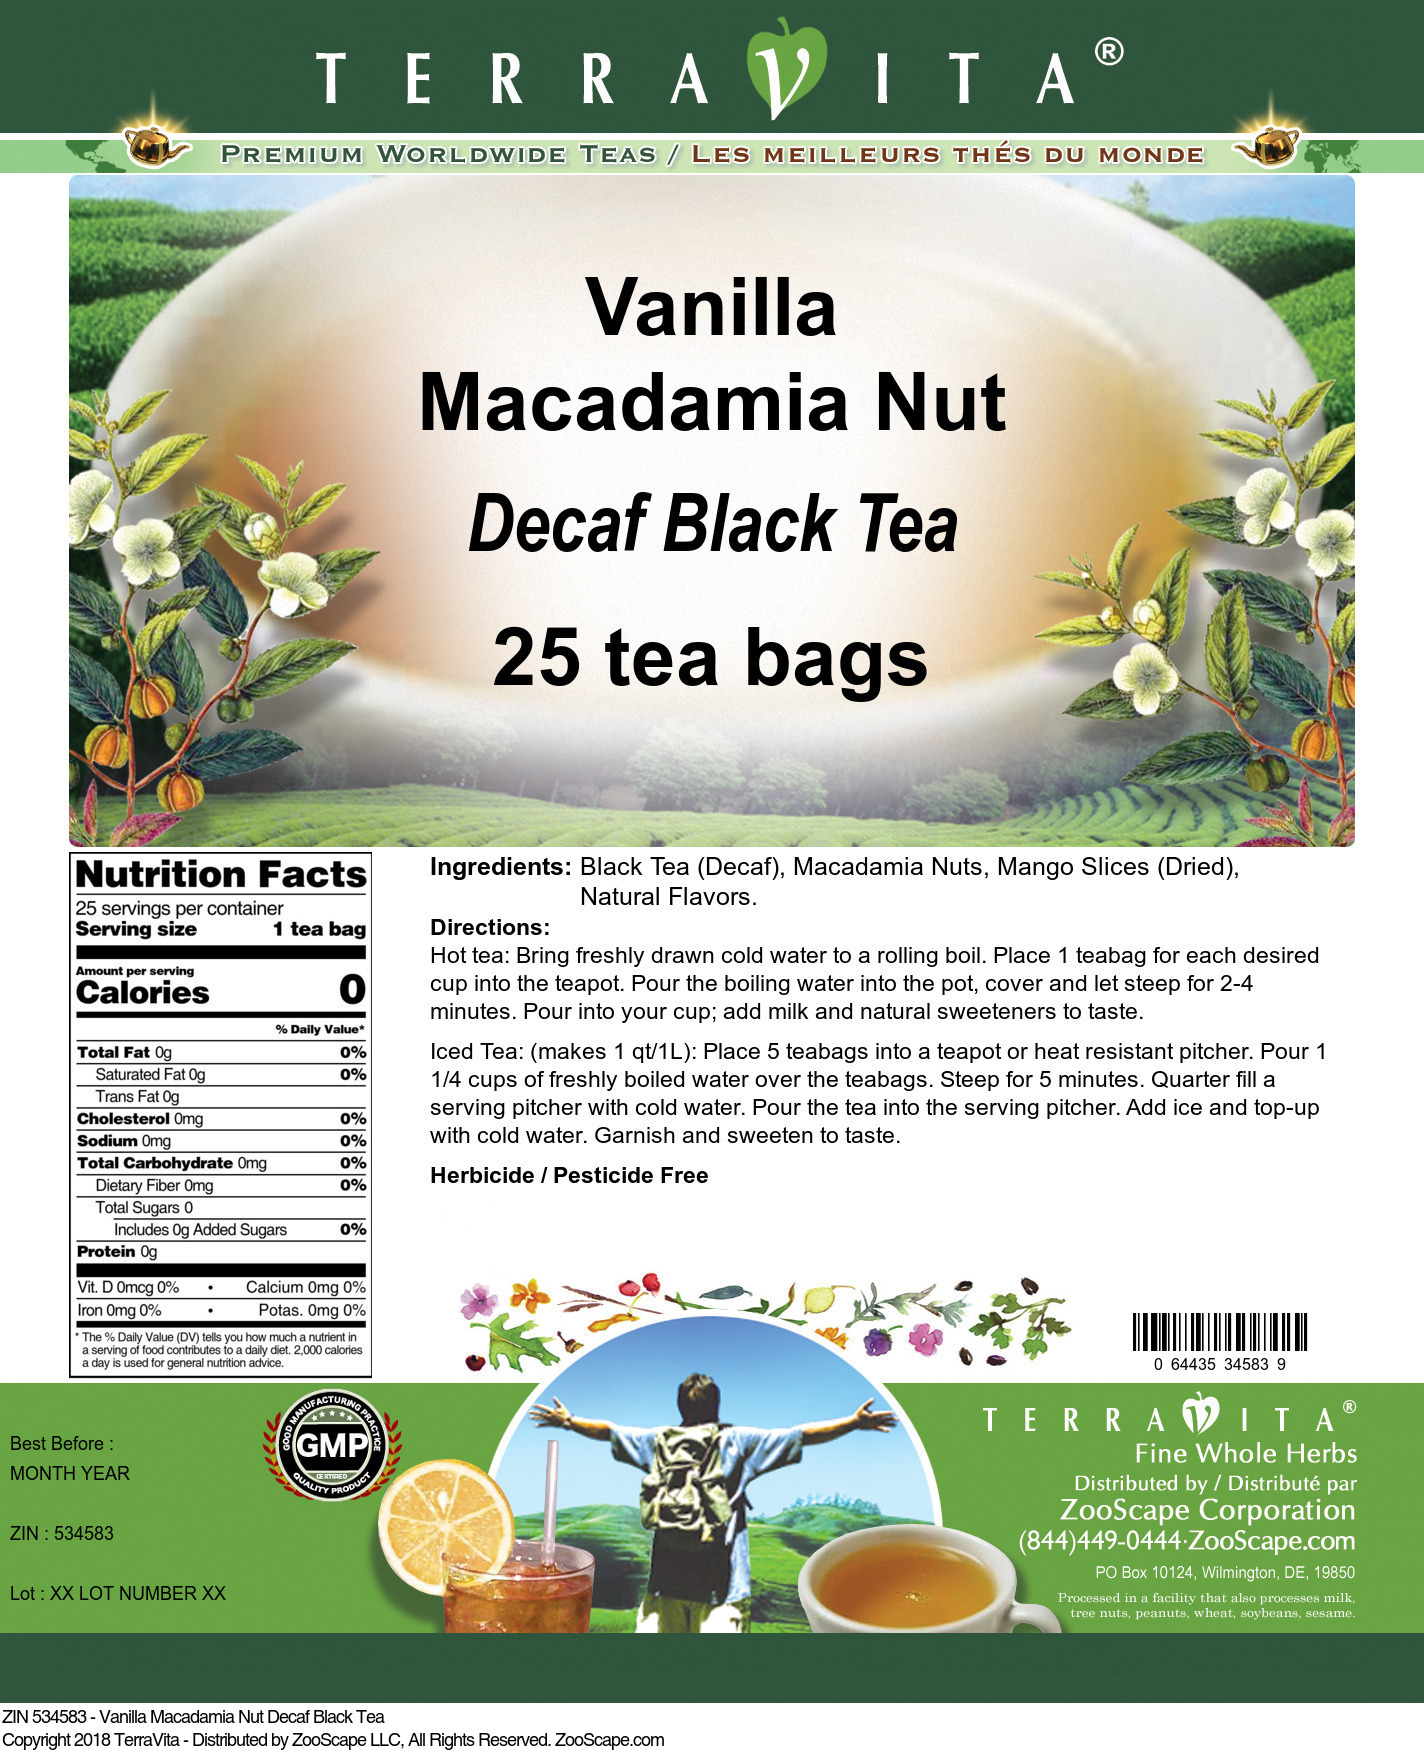 Vanilla Macadamia Nut Decaf Black Tea - Label